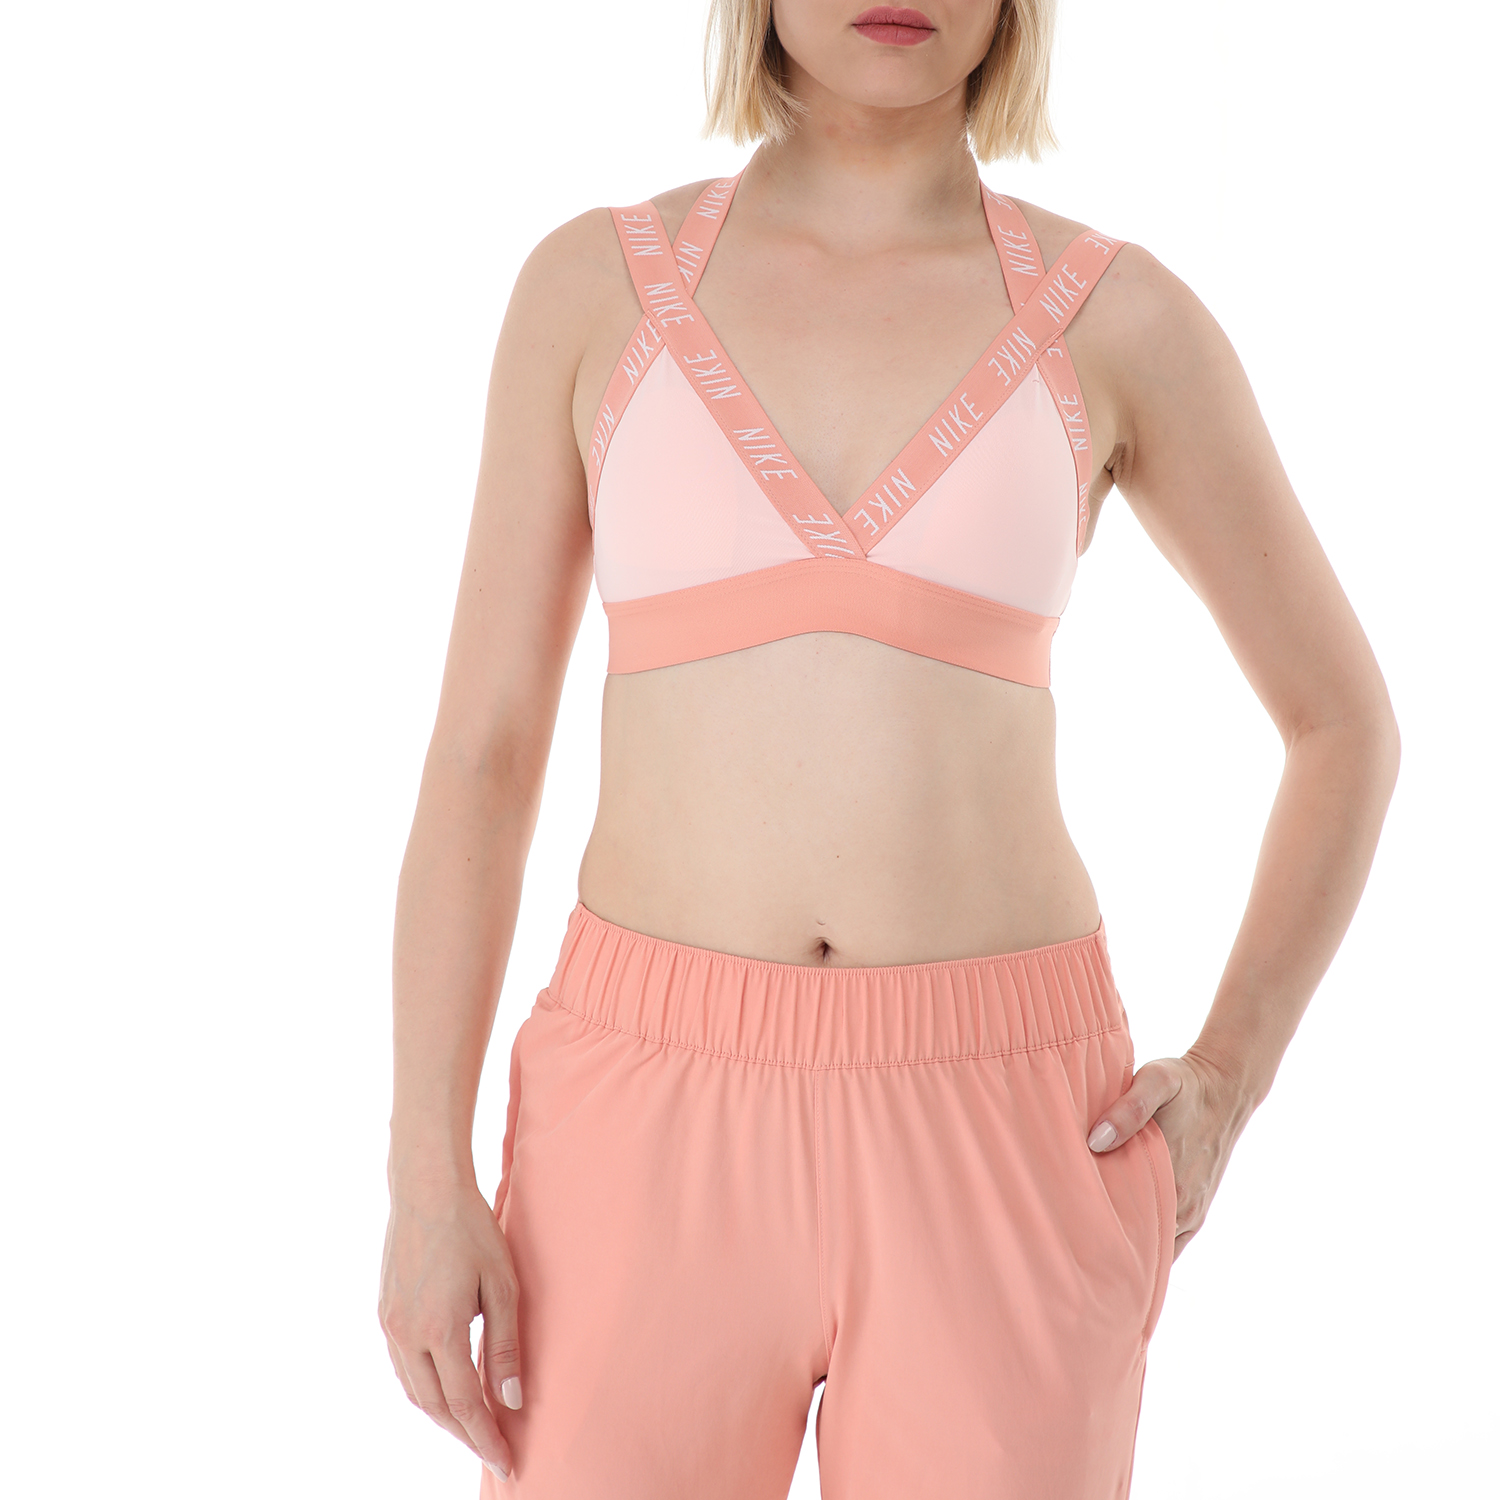 NIKE - Γυναικείο αθλητικό μπουστάκι NIKE INDY LOGO BRA ροζ Γυναικεία/Ρούχα/Αθλητικά/Μπουστάκια